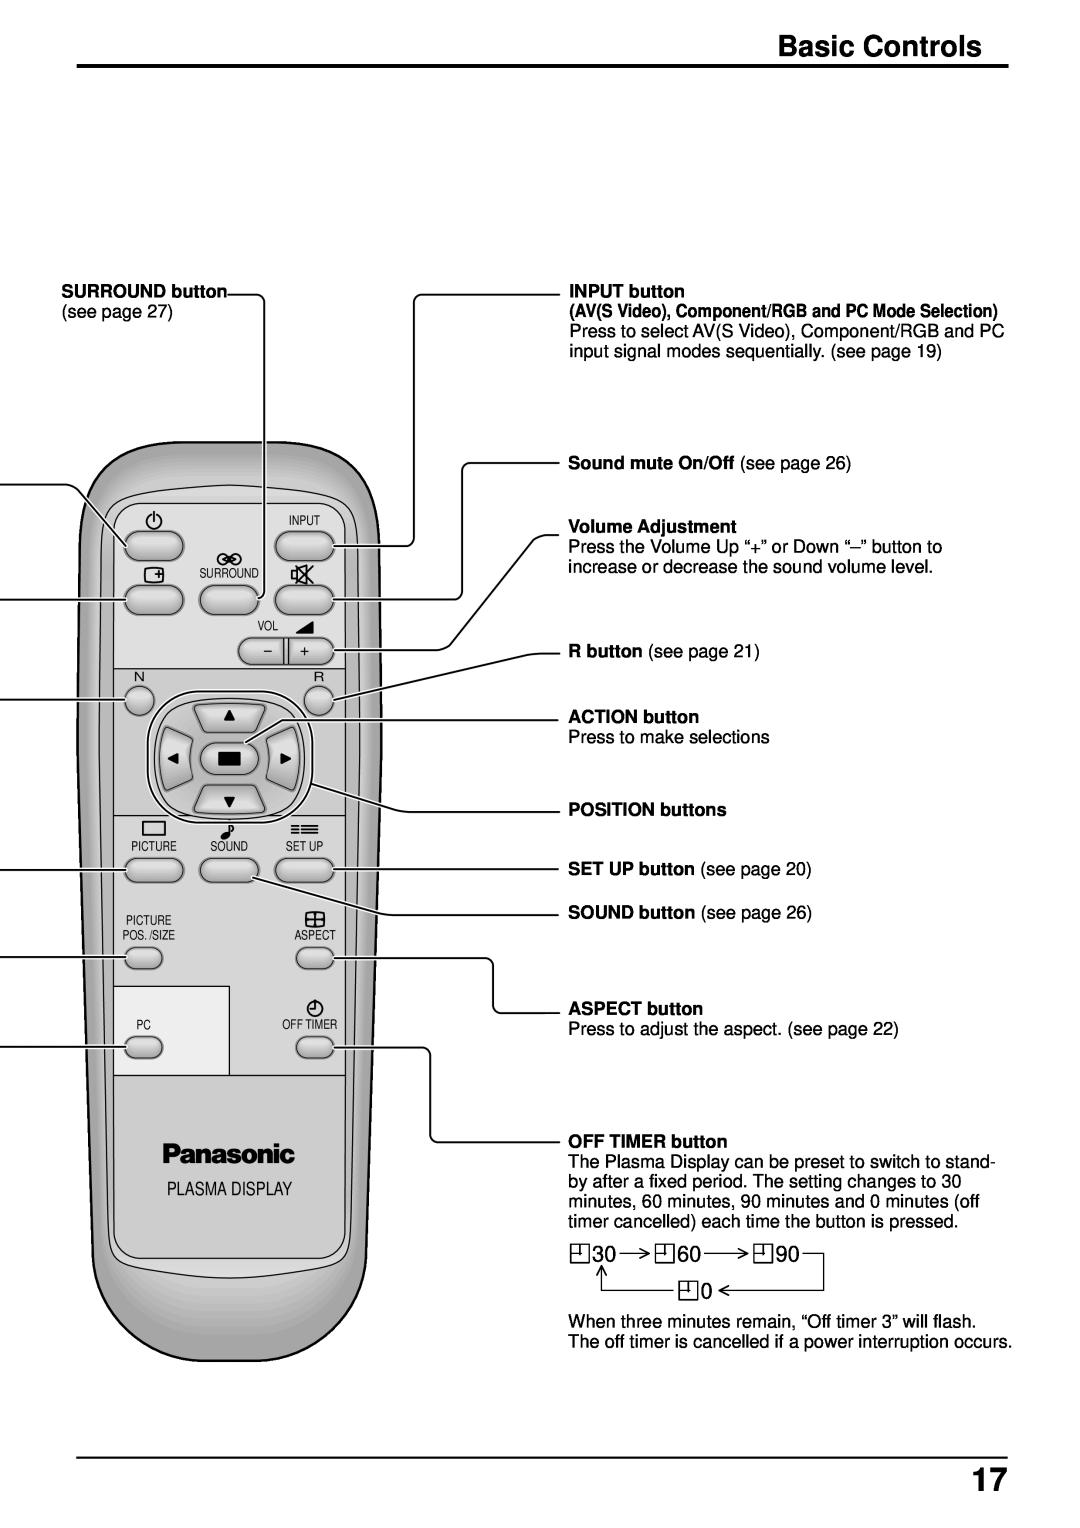 Panasonic TH-42PHW5, TH-50PHW5 manual Basic Controls, Plasma Display 